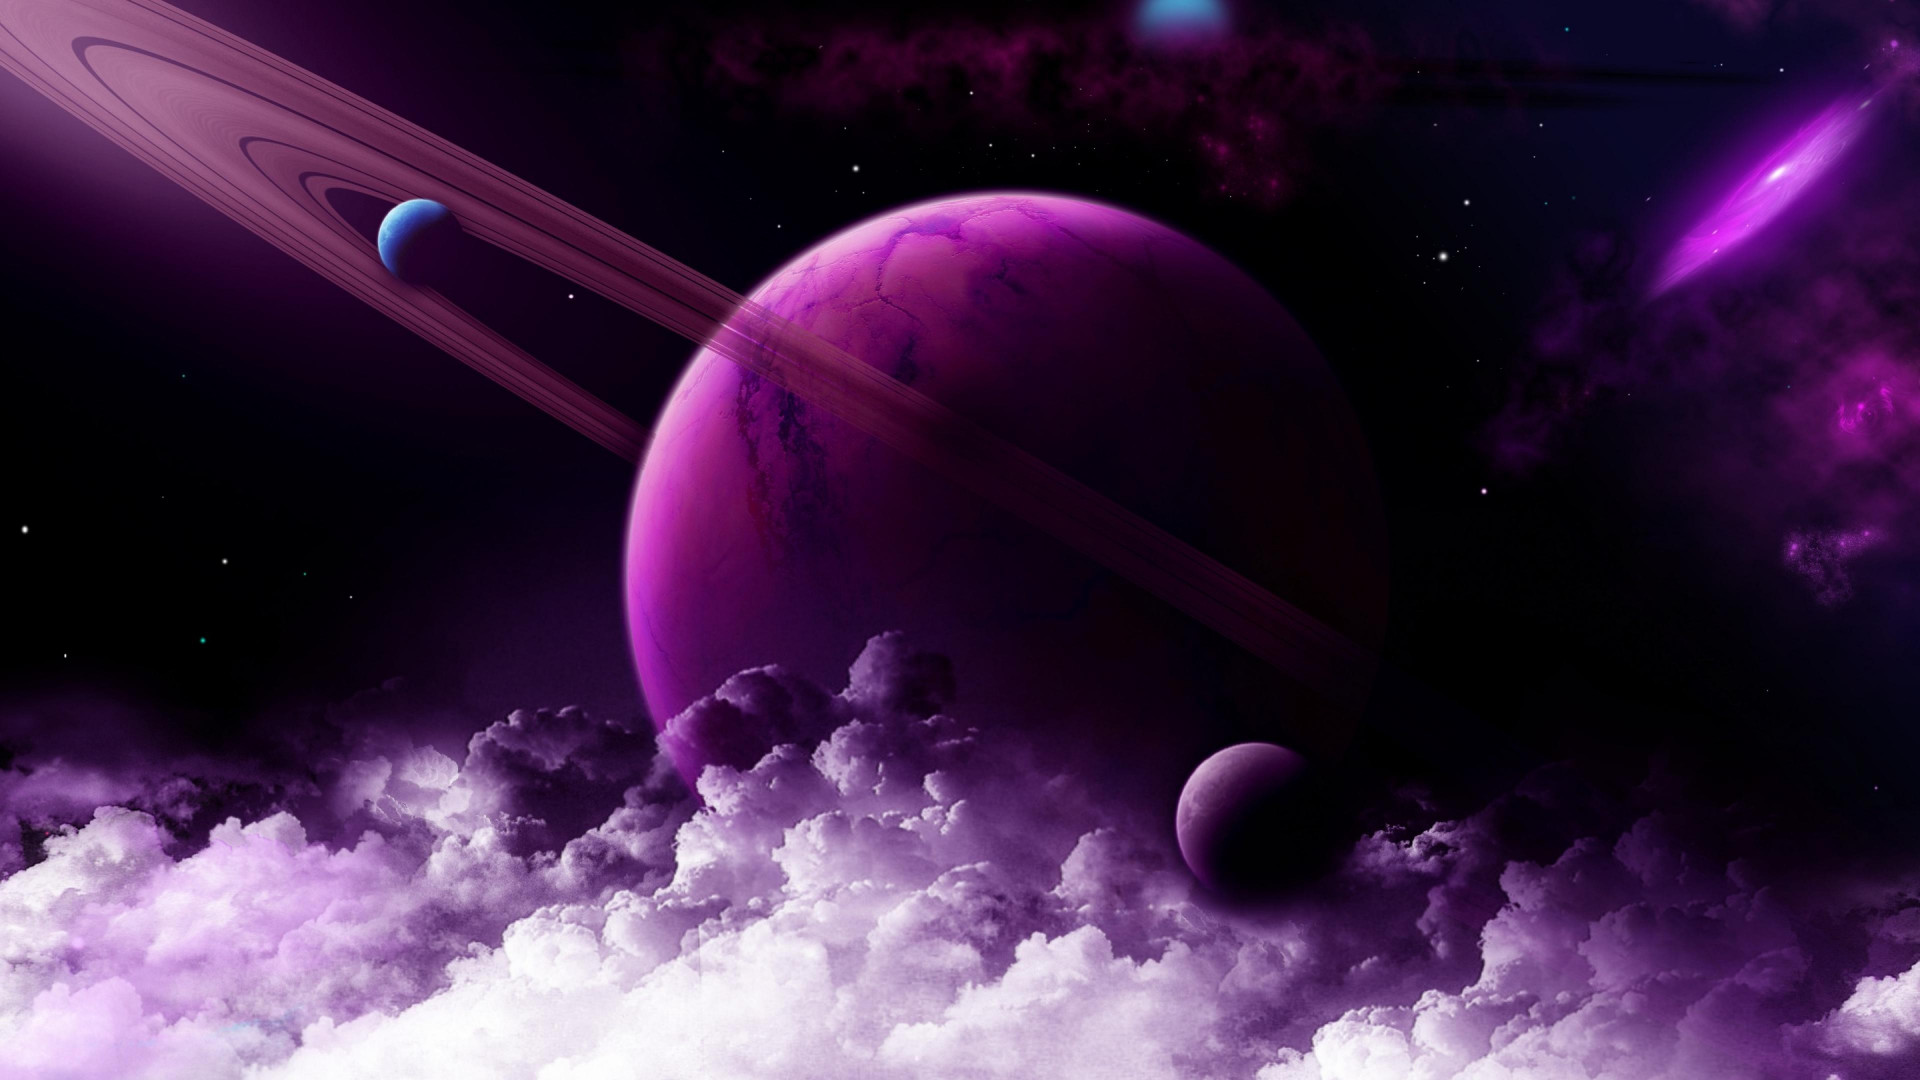 Với hình nền Sao Thổ với gam màu tím rực rỡ, bạn sẽ bước vào một thế giới khoa học viễn tưởng tuyệt vời. Hình nền được chế tác 4K với độ phân giải cao sẽ mang đến cho bạn một trải nghiệm tuyệt vời về không gian. Hãy thử xem mình đã sẵn sàng khám phá những điều bí ẩn của một hành tinh xa xôi hay chưa nhé!